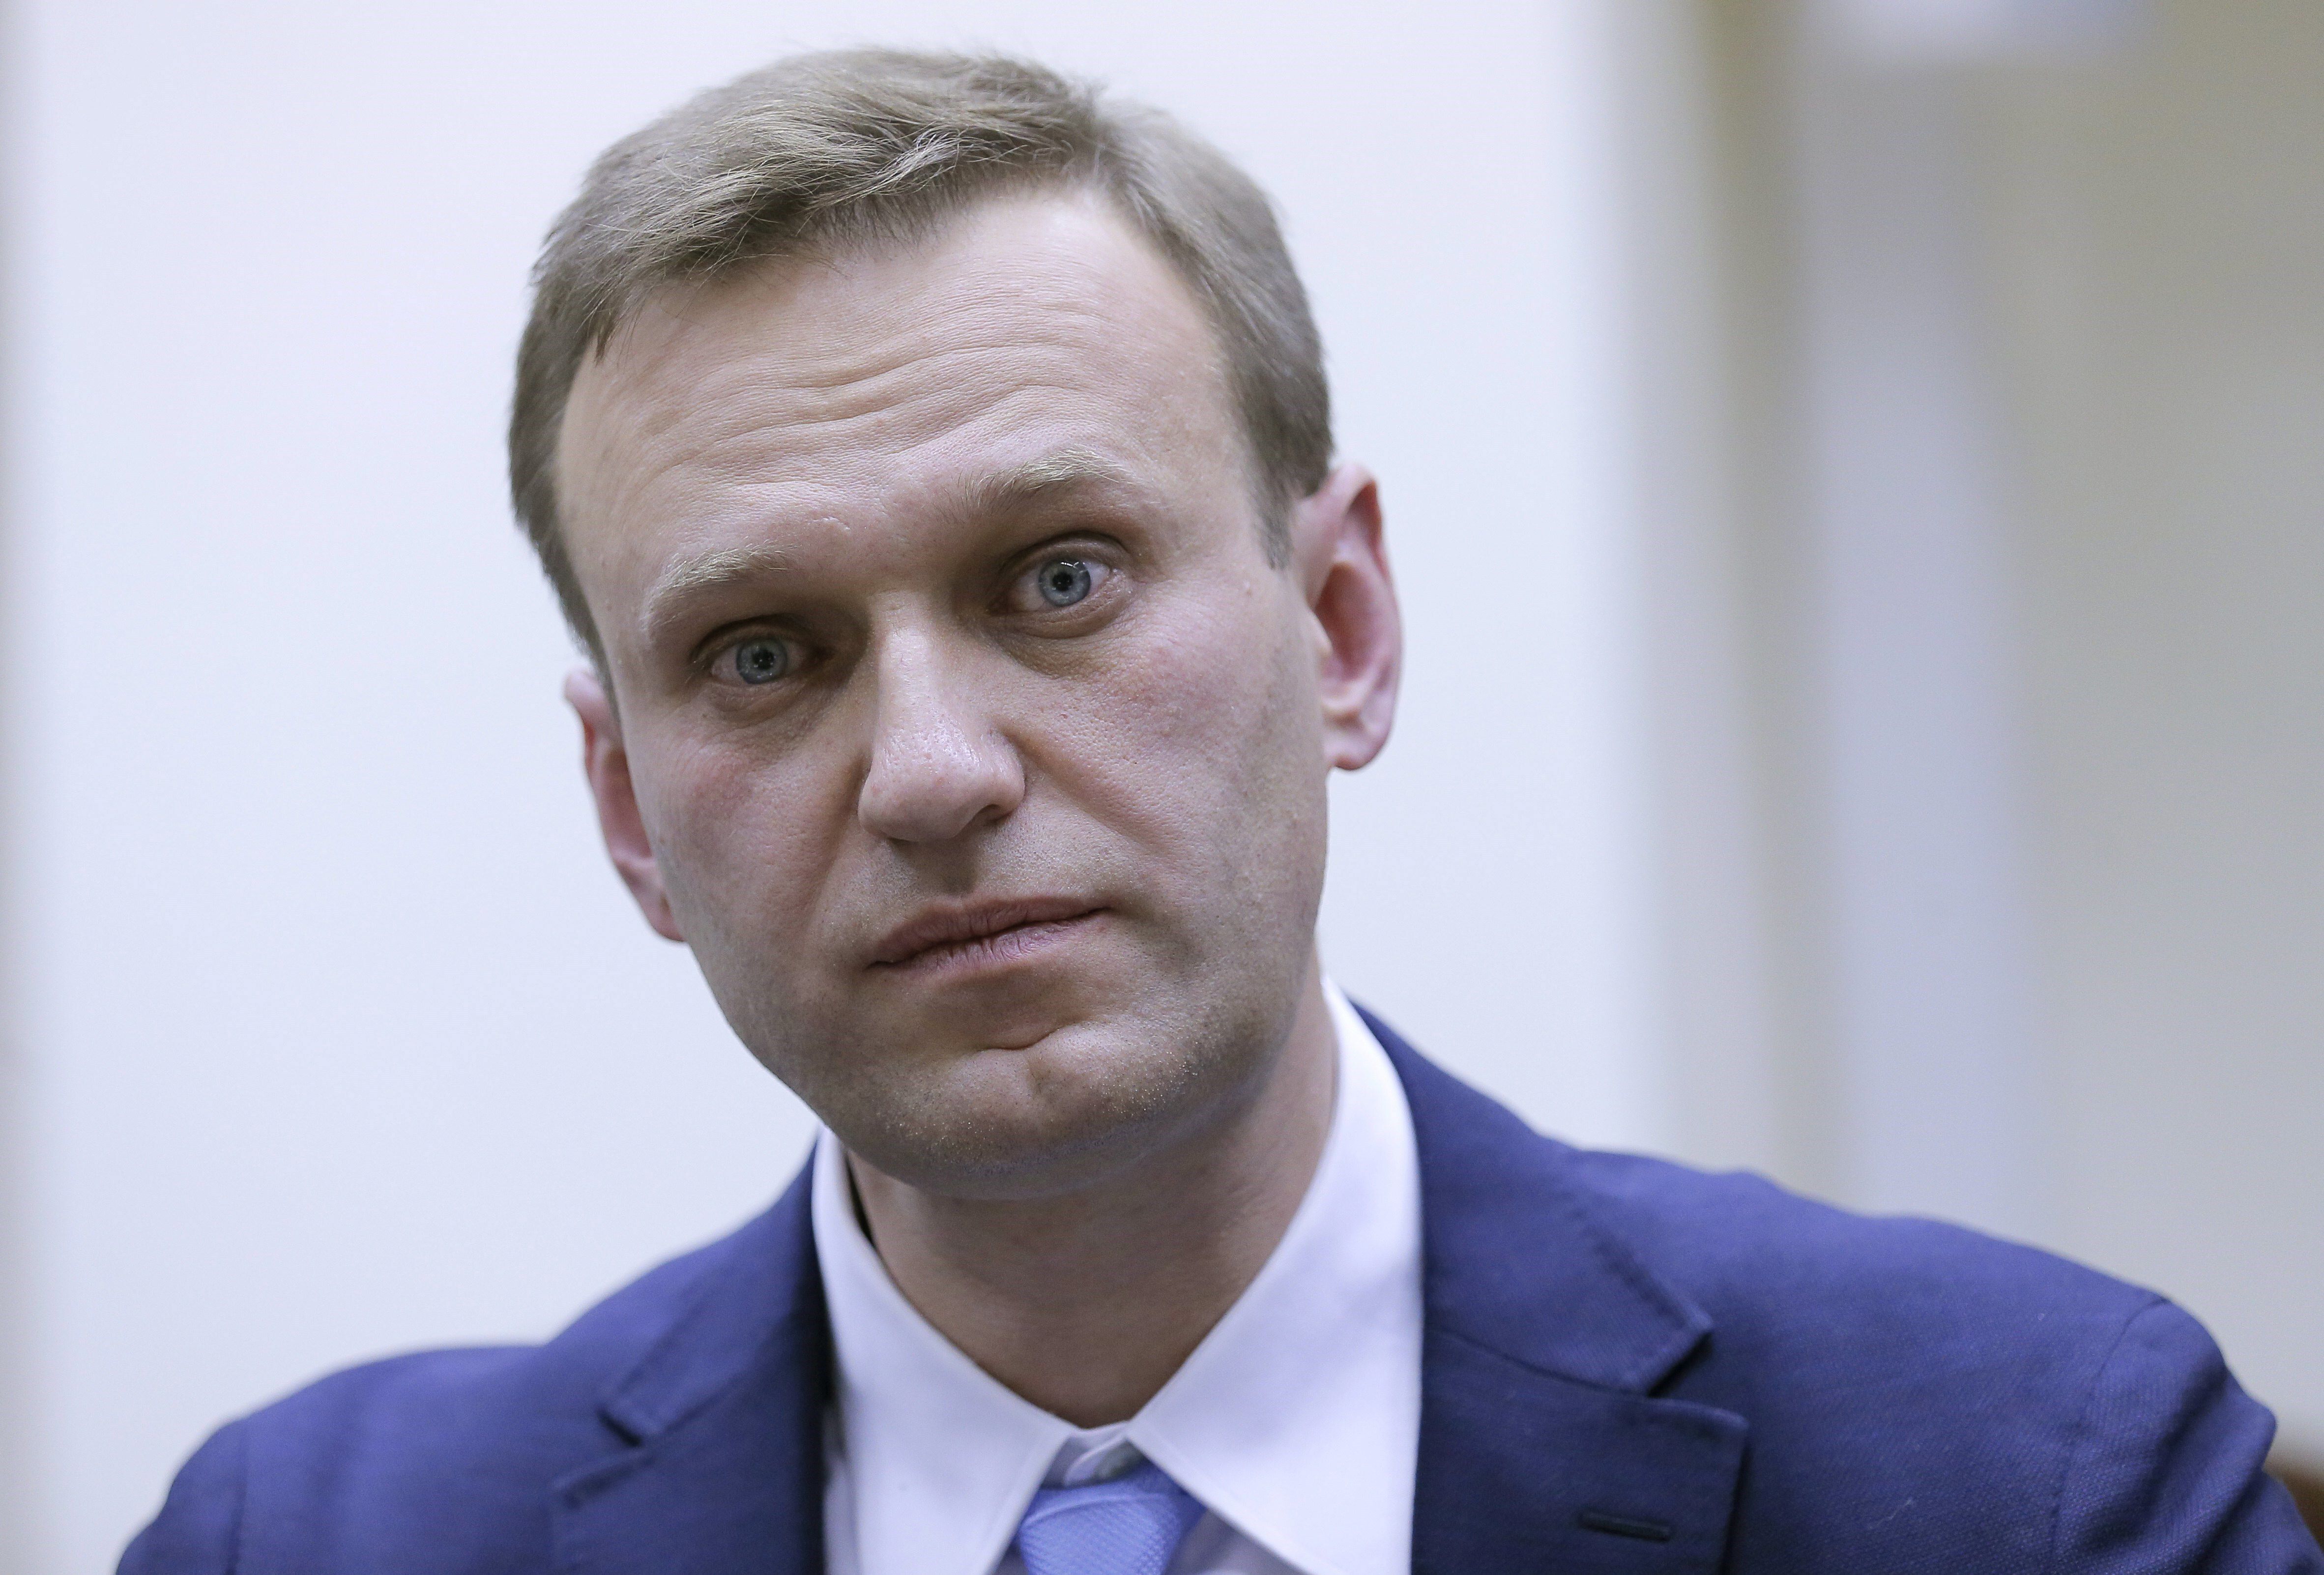 El líder opositor ruso Alexéi Navalni ha sido envenenado, según su portavoz